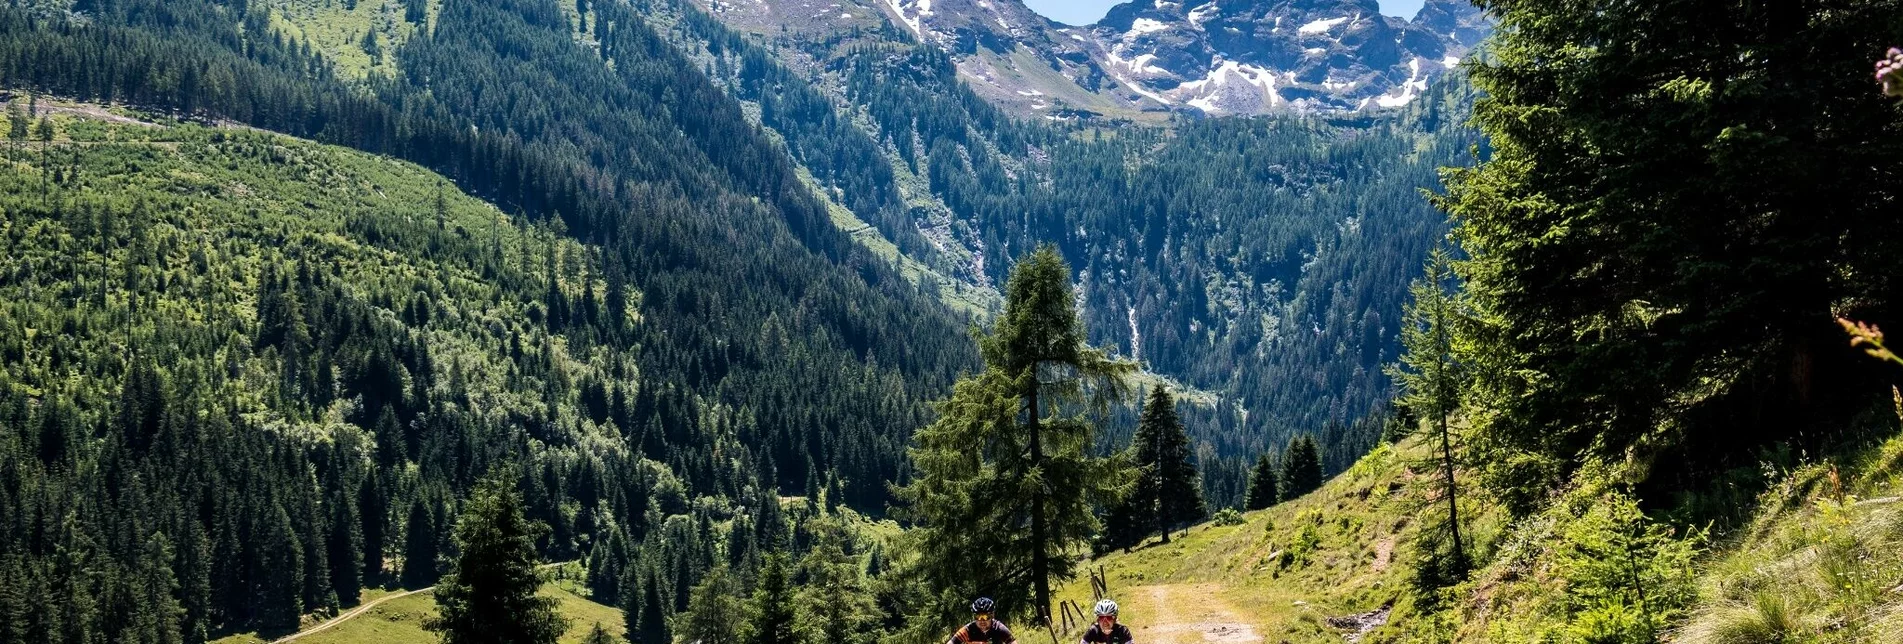 Mountain Biking Gumpental Tour | 91 - Touren-Impression #1 | © Erlebnisregion Schladming-Dachstein